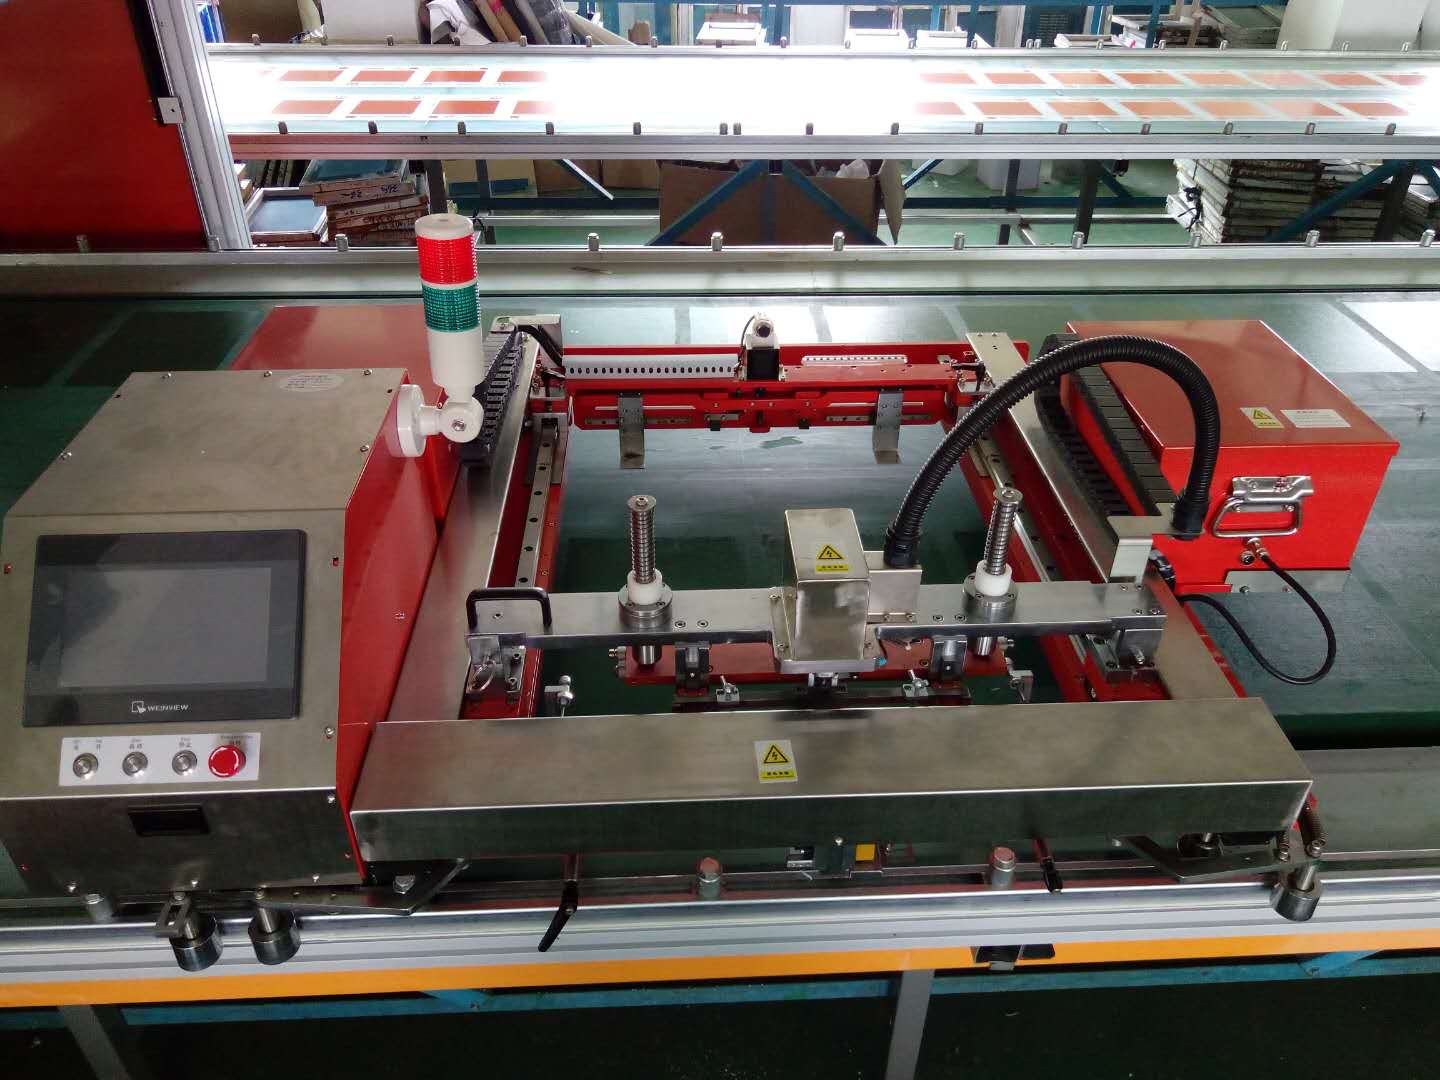 欧悦跑台丝印机智能全自动丝印机印刷设备厂家